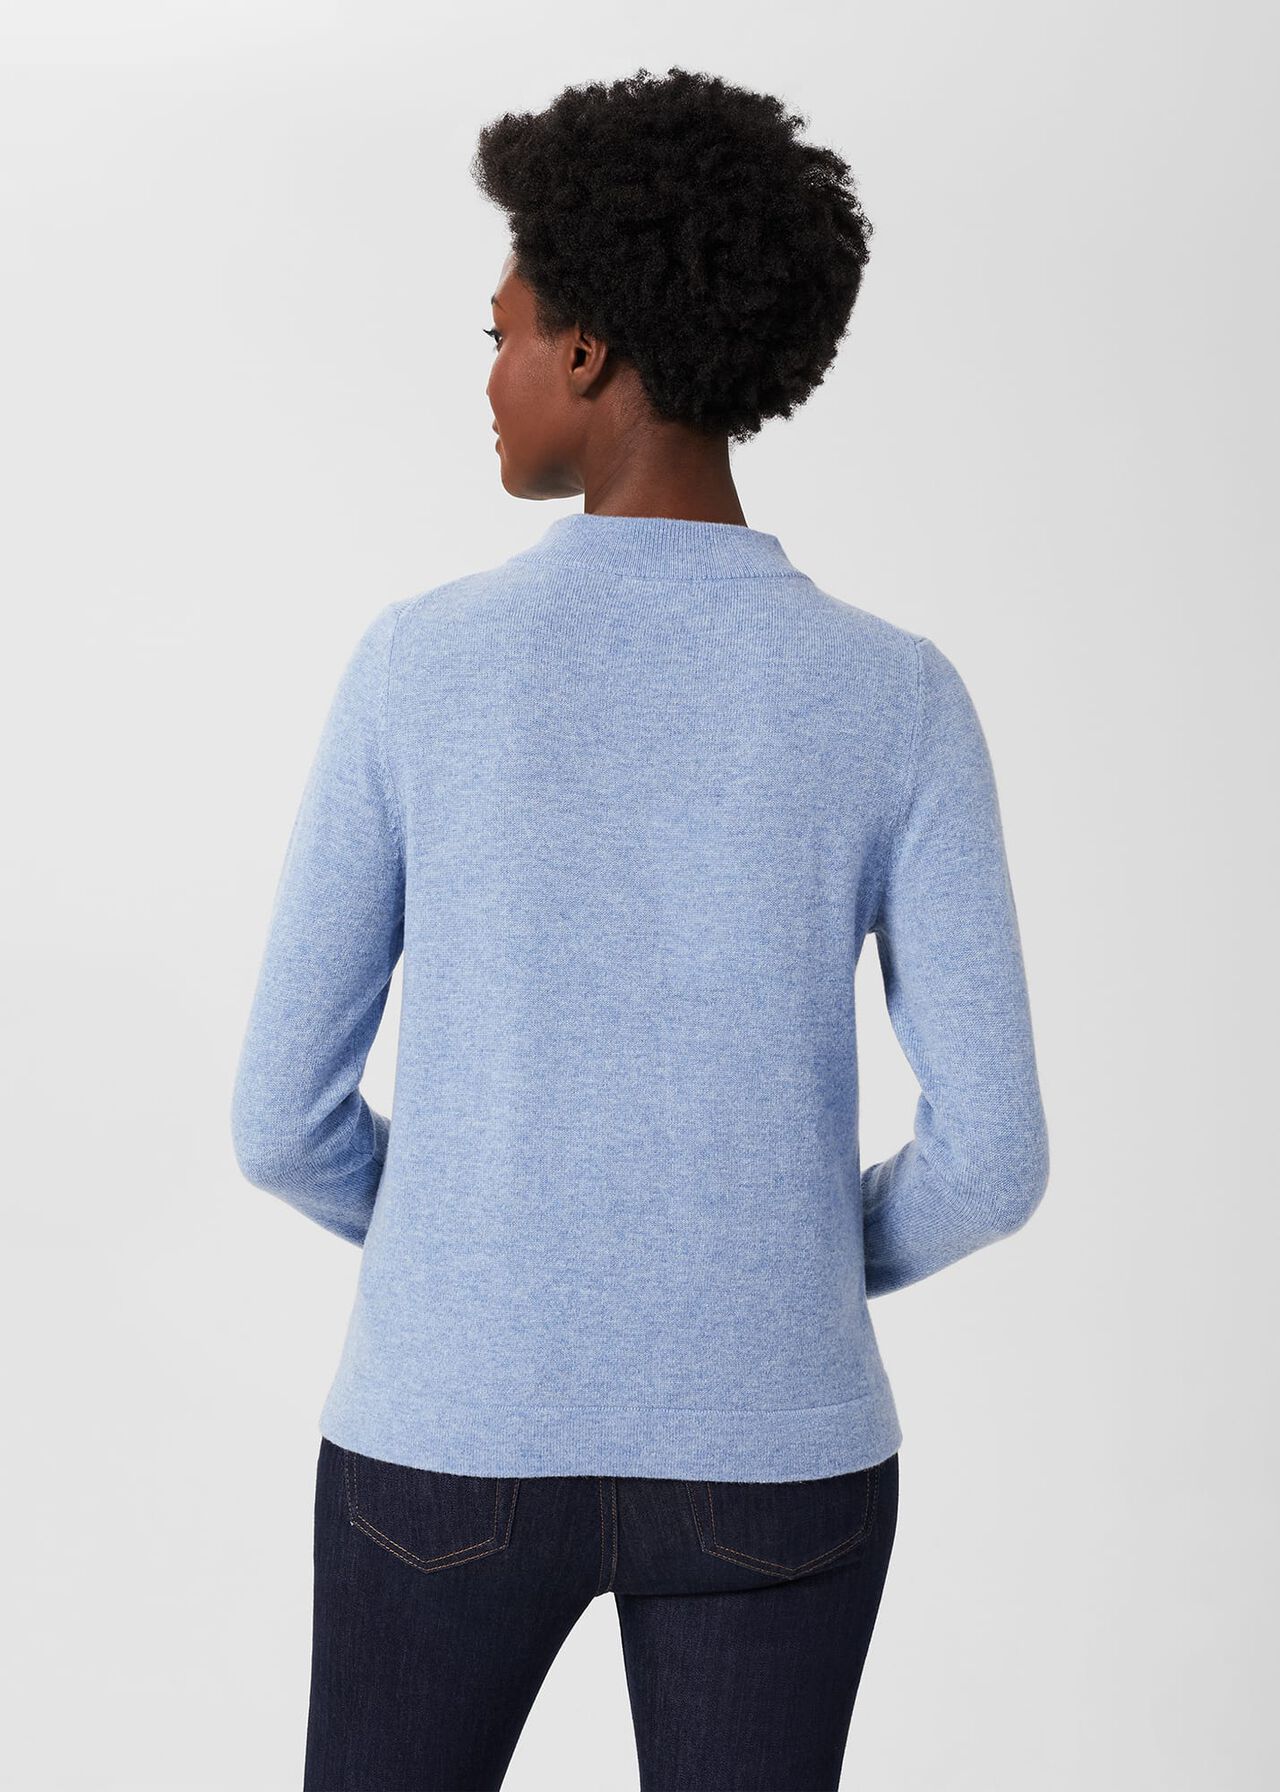 Talia Wool Cashmere Sweater, Blue Marl, hi-res